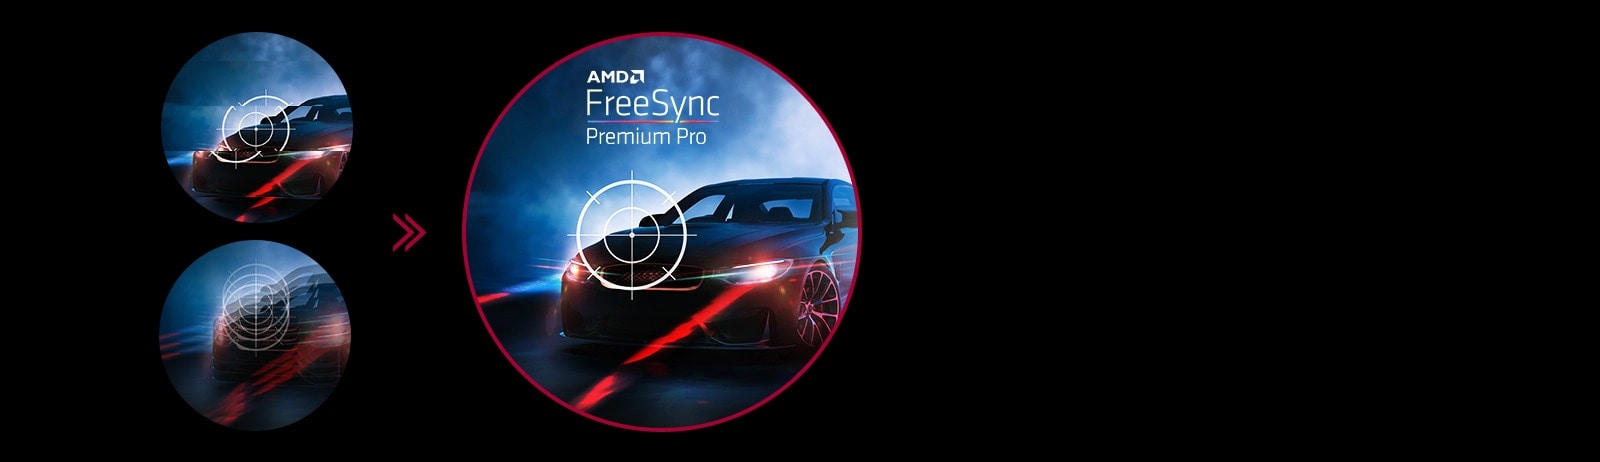 טכנולוגיית AMD FreeSync™ Premium Pro מקטינה תופעות כגון גמגום וקריעת מסך.